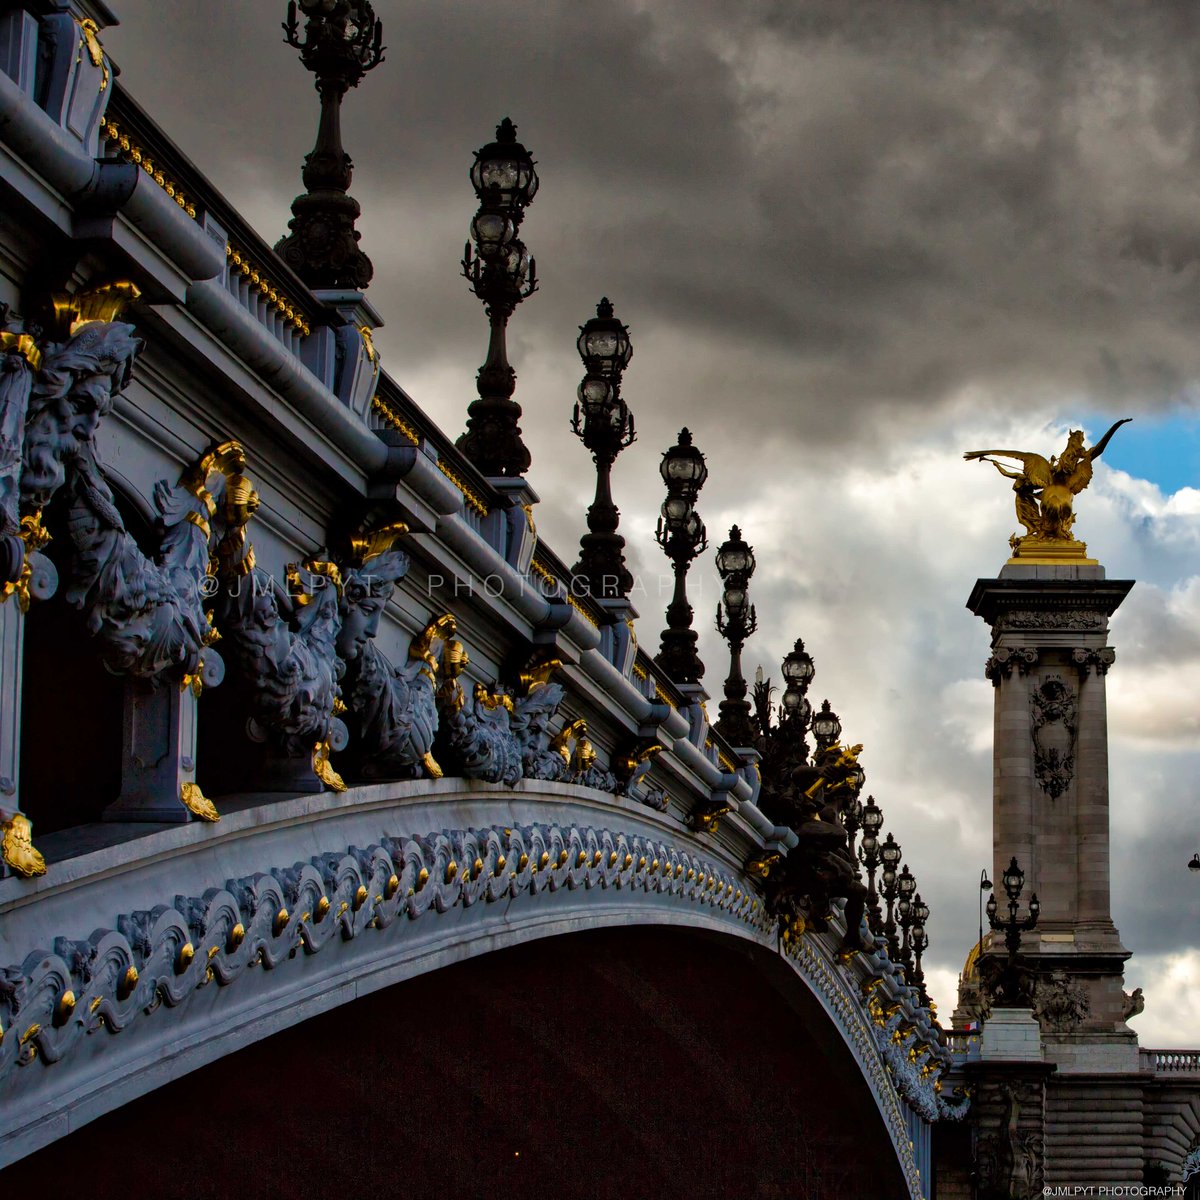 Paris : Pont Alexandre III

#paris #tourisme #pont #architecture #architecturephotography #Travel #France #voyage #pontalexandre #pontalexandreIII #alexandreIII #francemagazine #alliancefrançaise